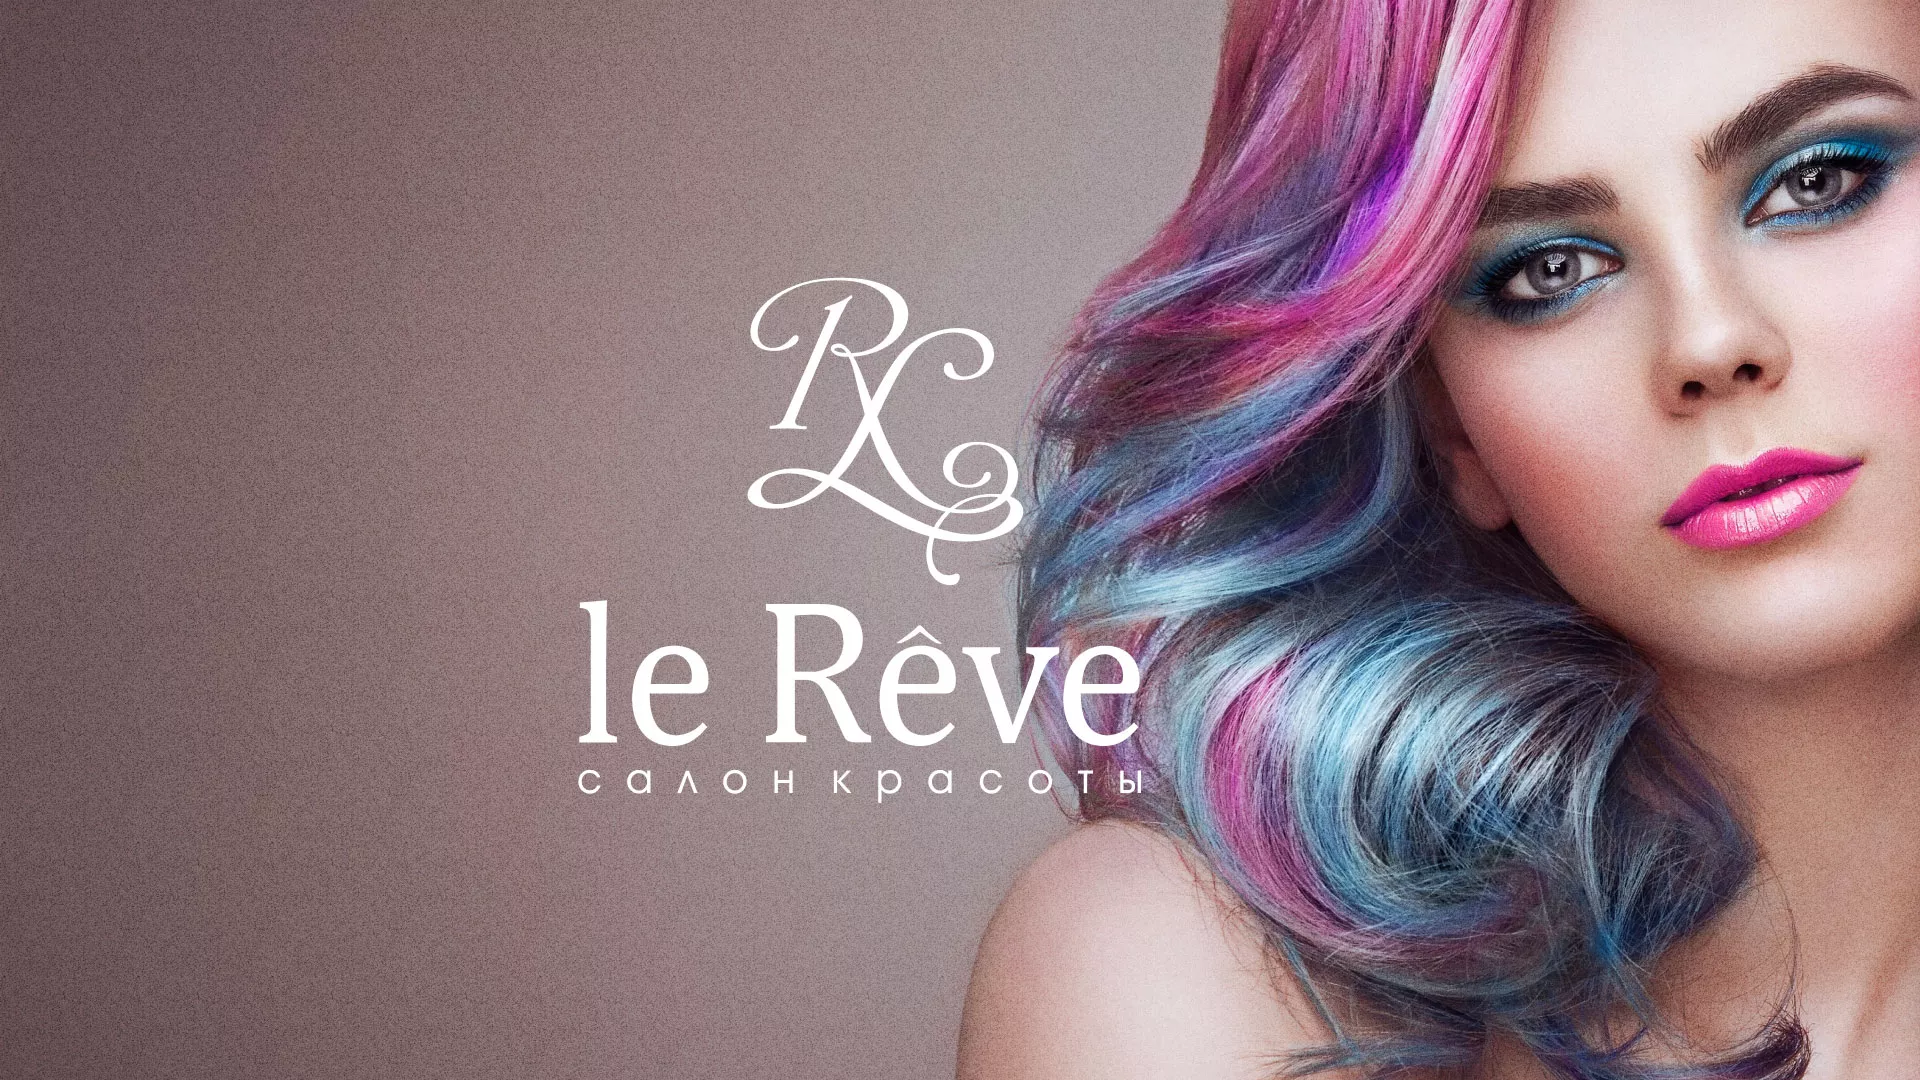 Создание сайта для салона красоты «Le Reve» в Йошкар-Оле